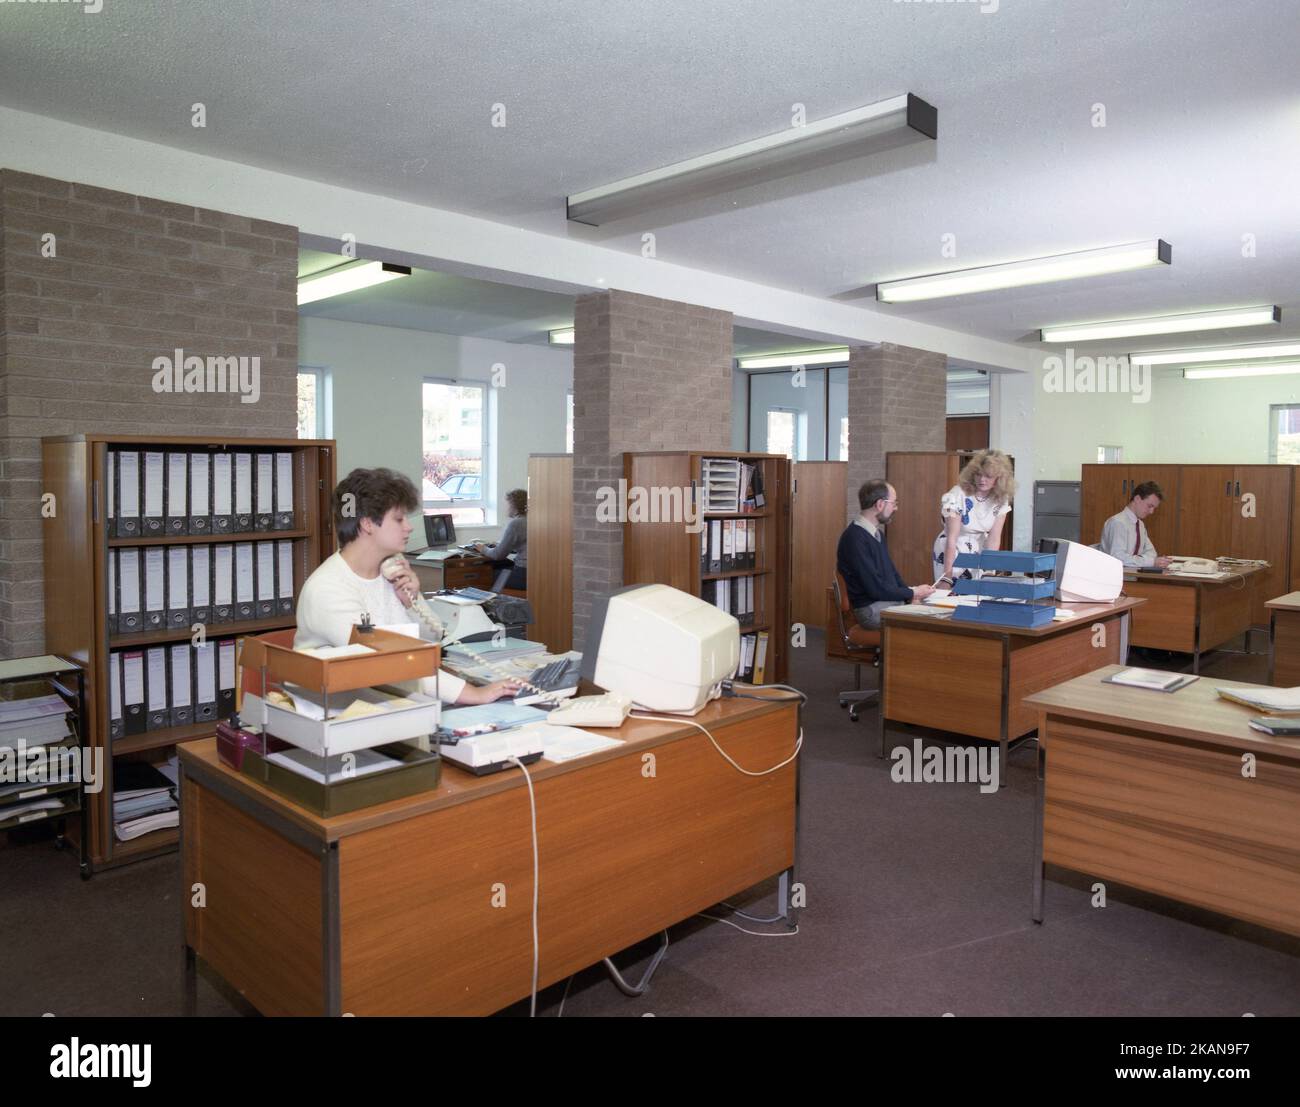 1989, personale storico, maschile e femminile che lavora in un ufficio, seduto a scrivanie di legno, con in vassoi, aggiungendo macchine e piccoli terminali informatici del giorno. Foto Stock